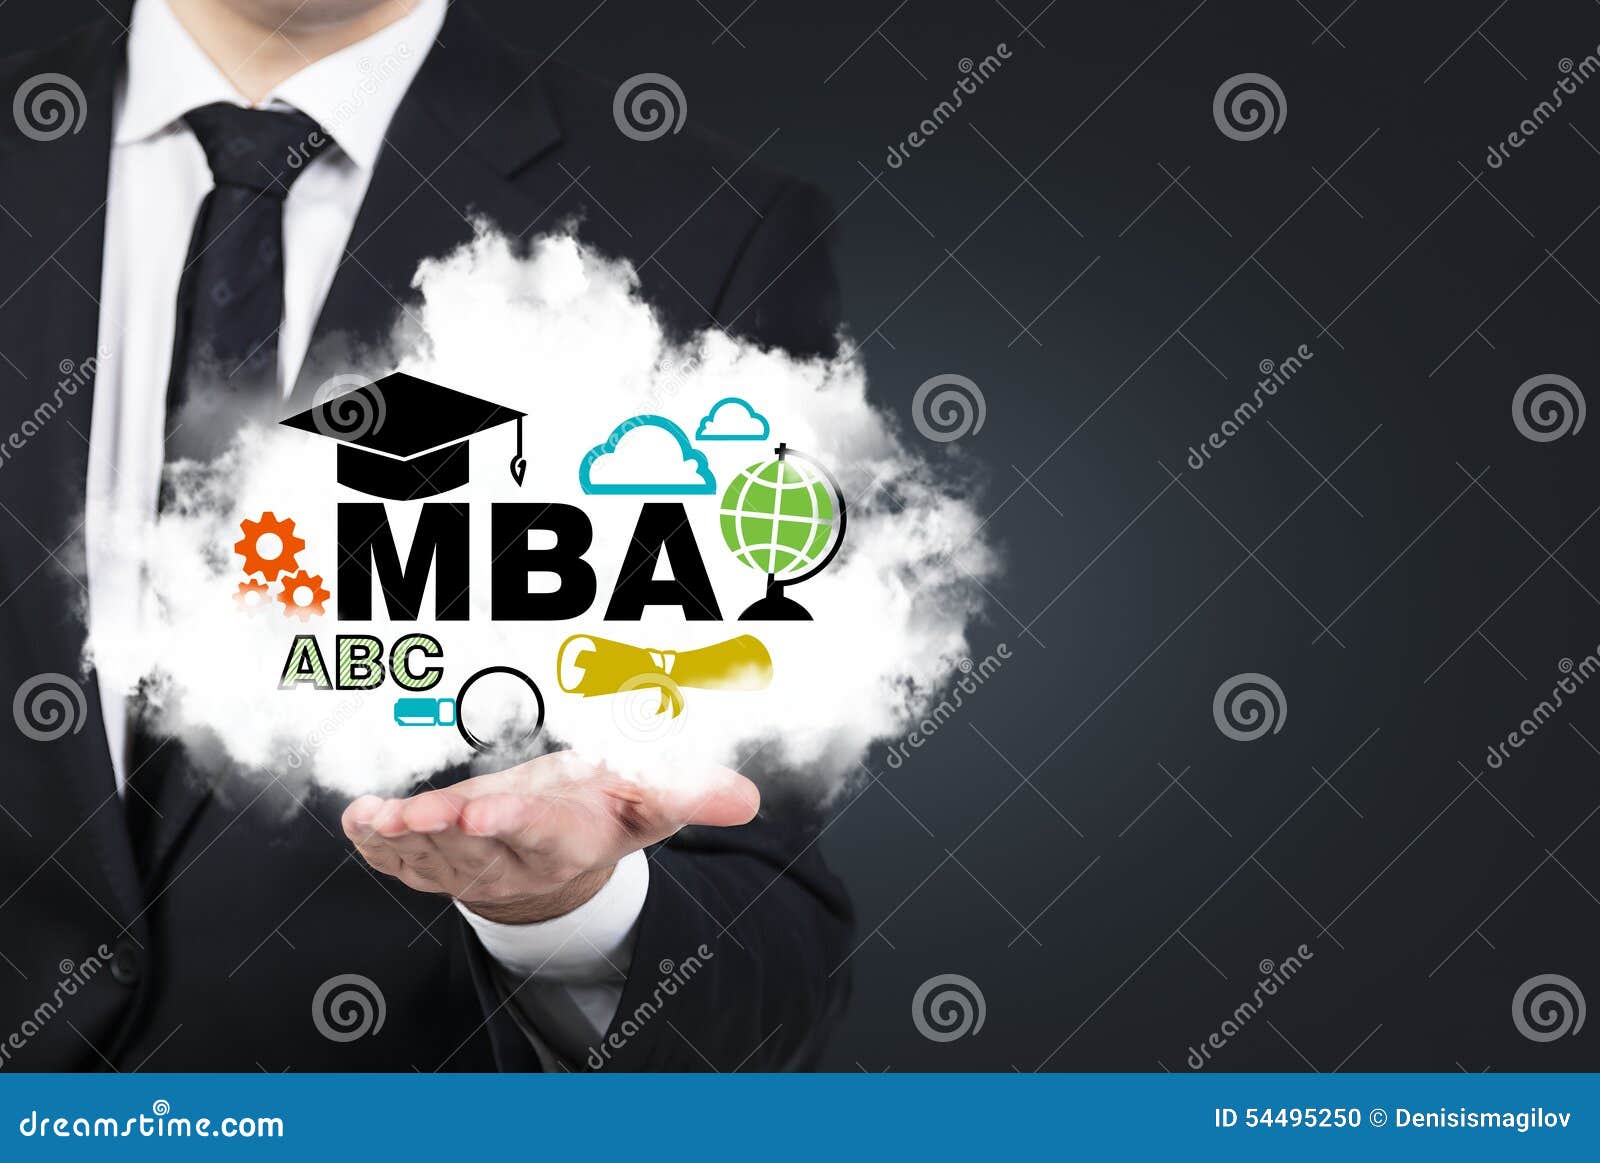 Бизнес мба. Бизнес-образование MBA. Курсы MBA. МВА. Mini MBA.